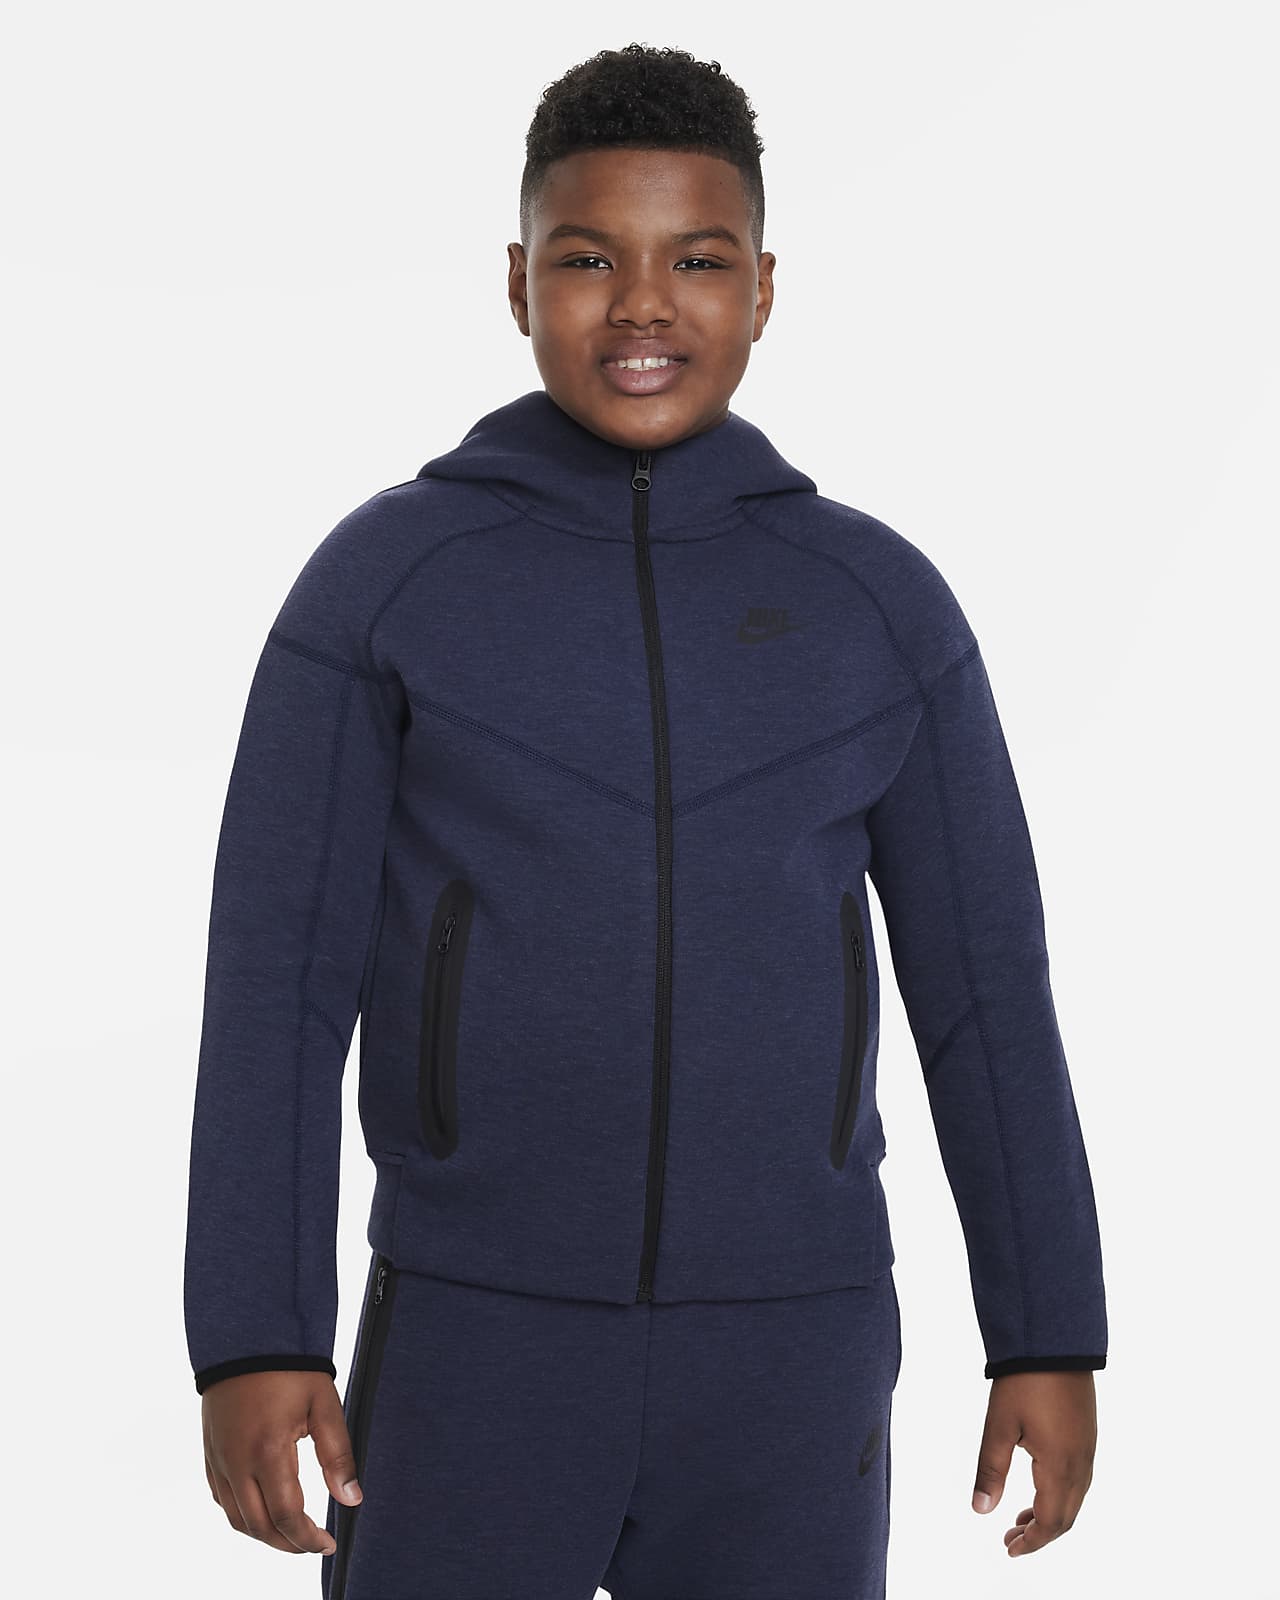 Huvtröja med hel dragkedja Nike Sportswear Tech Fleece för ungdom (killar) (utökade storlekar)